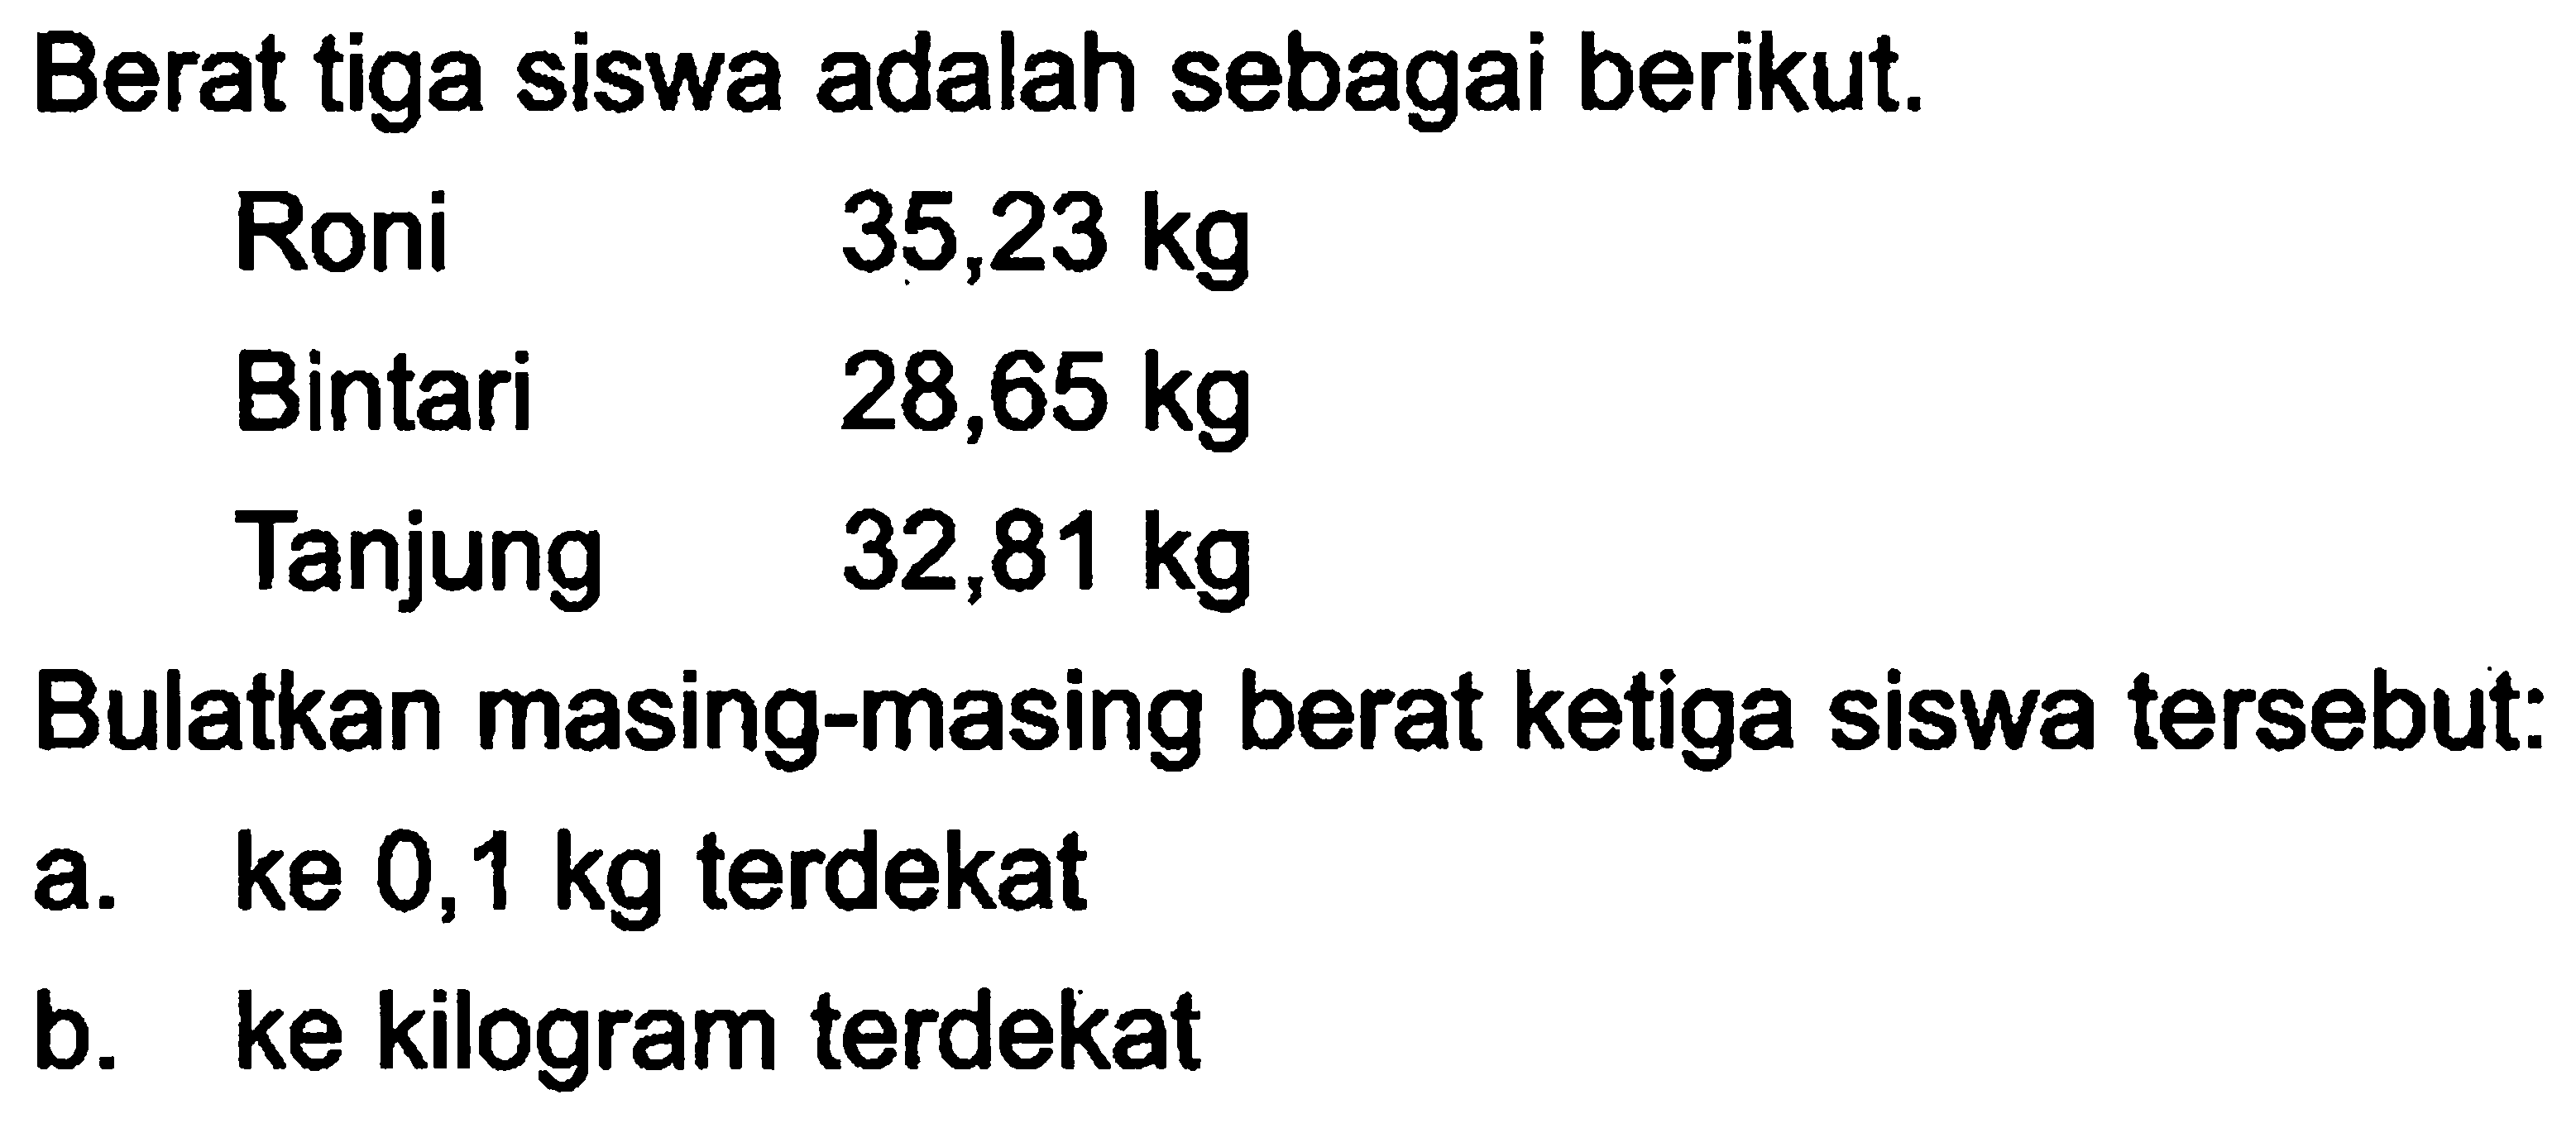 Berat tiga siswa adalah sebagai berikut. Roni 35,23 kg Bintari 28,65 kg Tanjung 32,81 kg Bulatkan masing-masing berat ketiga siswa tersebut: a. ke 0,1 kg terdekat b. ke kilogram terdekat